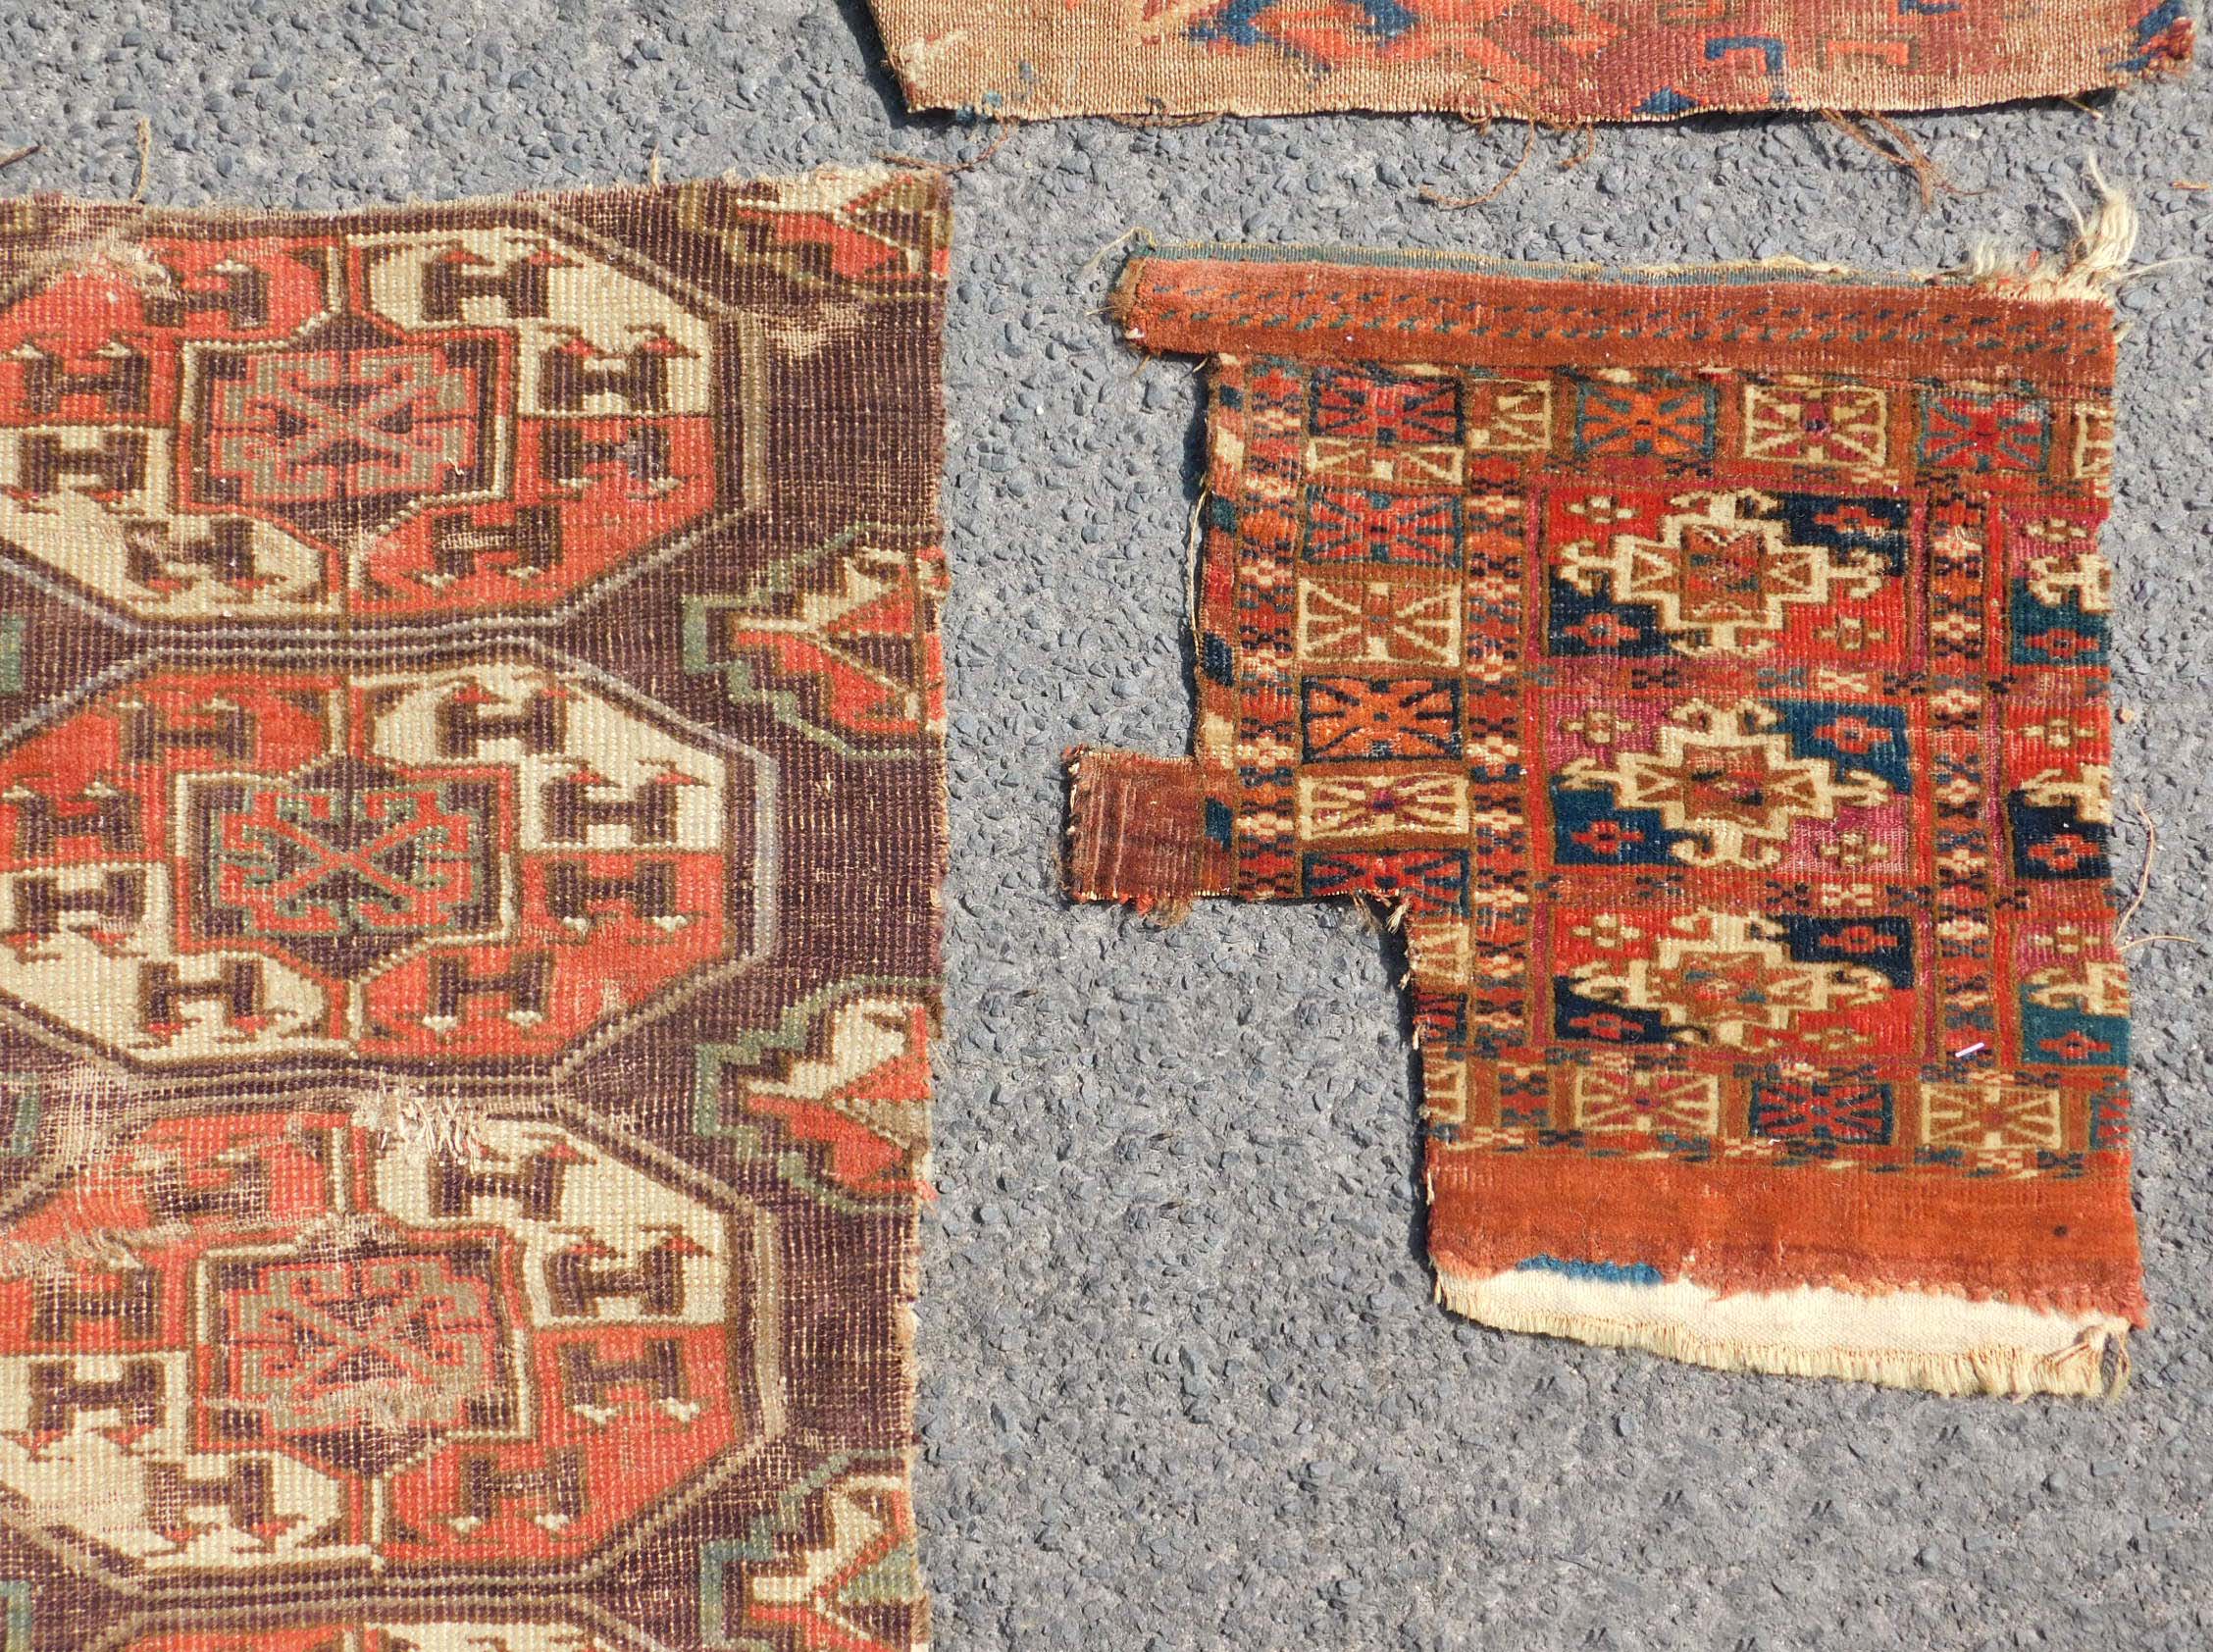 Studiensammlung. 5 Turkmenen Stammesteppich Fragmente. Antik. - Image 5 of 5